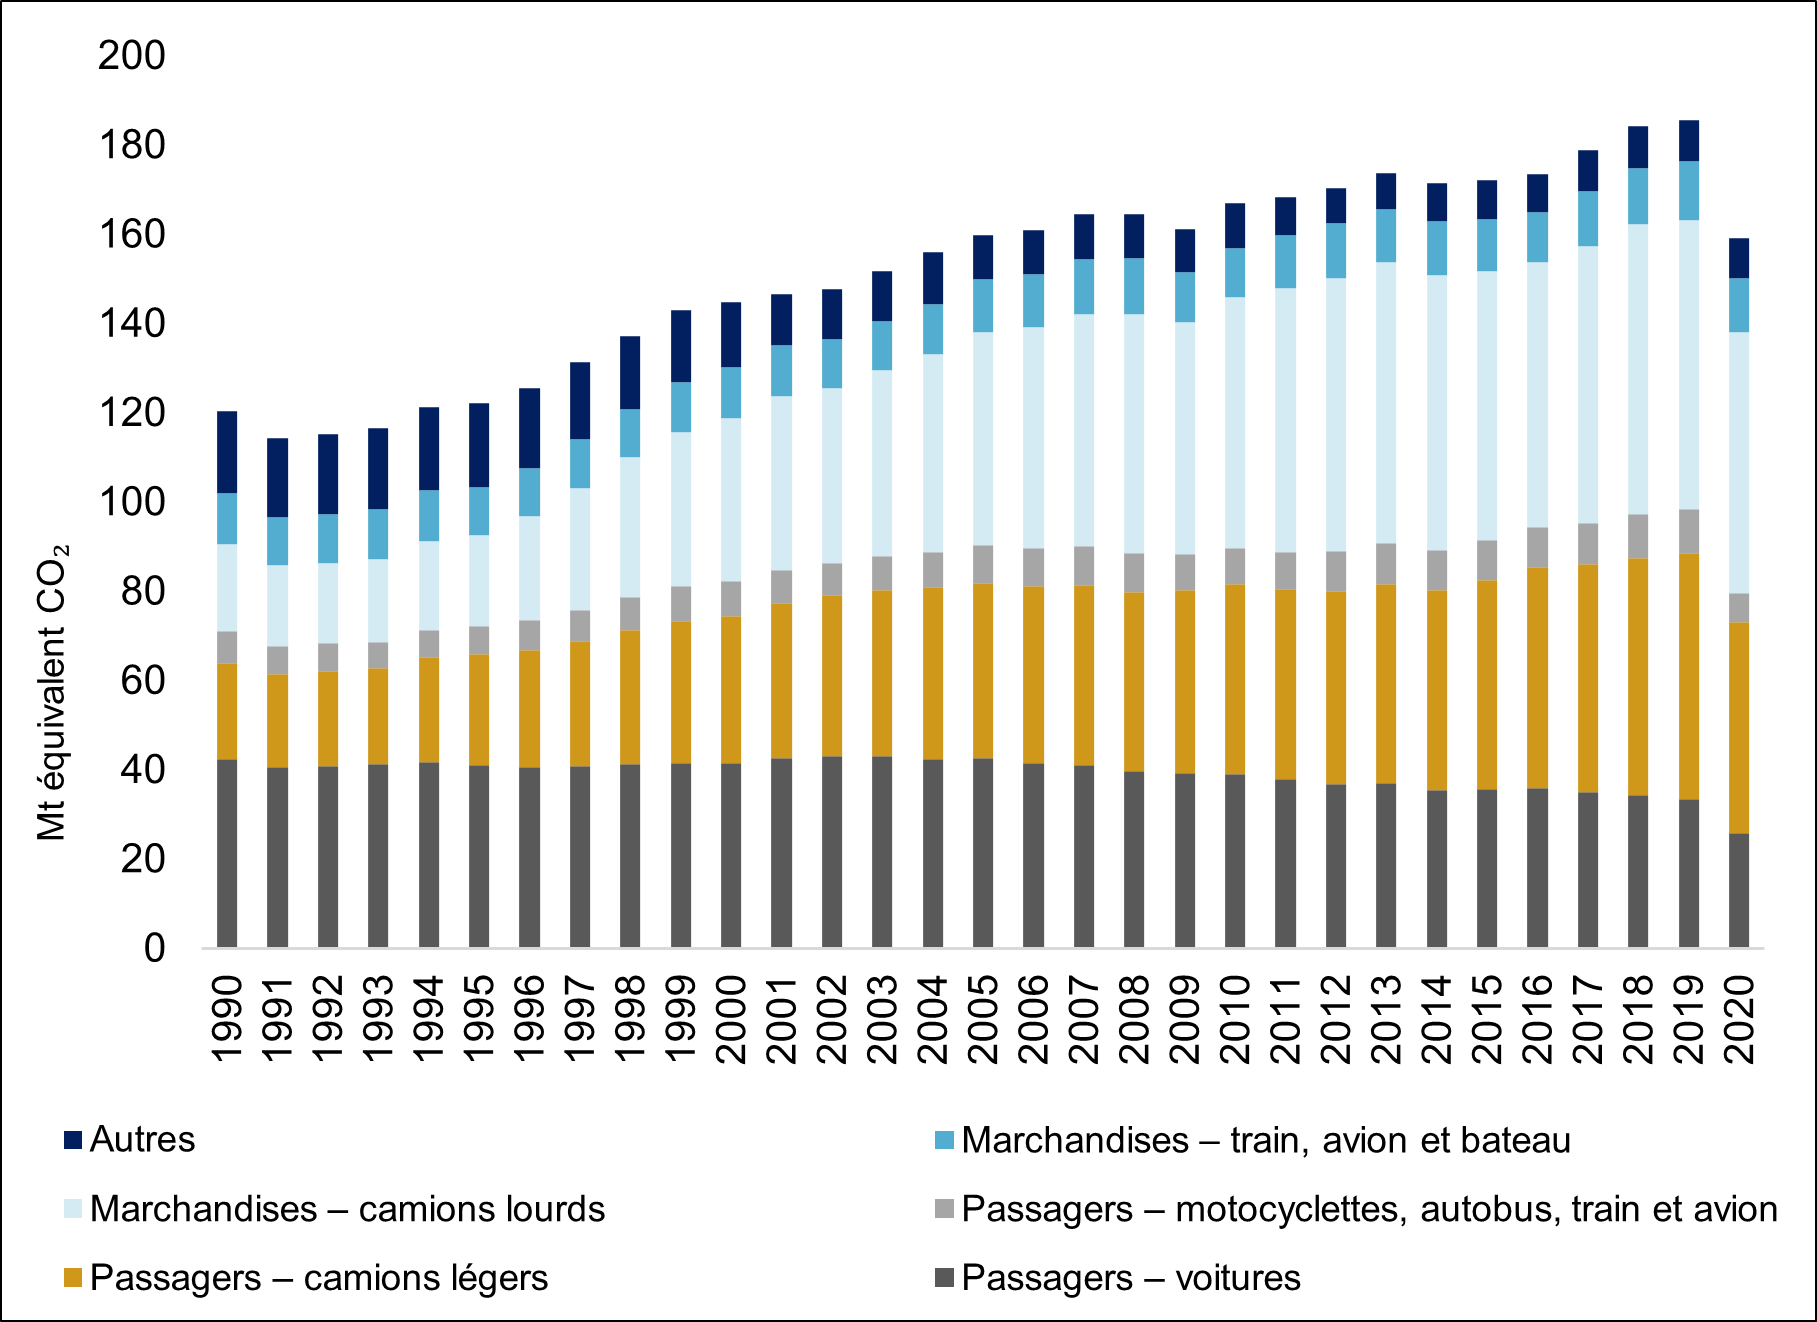 La figure 7 illustre les émissions de gaz à effet de serre produites par le secteur du transport au Canada de 1990 à 2020. La figure montre une augmentation graduelle – avec des fluctuations mineures – des émissions totales de gaz à effet de serre produites par le secteur du transport de 1990 à 2020. En 2020, les émissions totales de gaz à effet de serre du secteur ont diminué considérablement. Pourtant, on constate que les émissions des camions lourds de transport de marchandises ont plus que triplé au cours de la période étudiée, passant de 19,4 mégatonnes d’équivalent en dioxyde de carbone en 1990 à 58,5 mégatonnes d’équivalent en dioxyde de carbone en 2020.